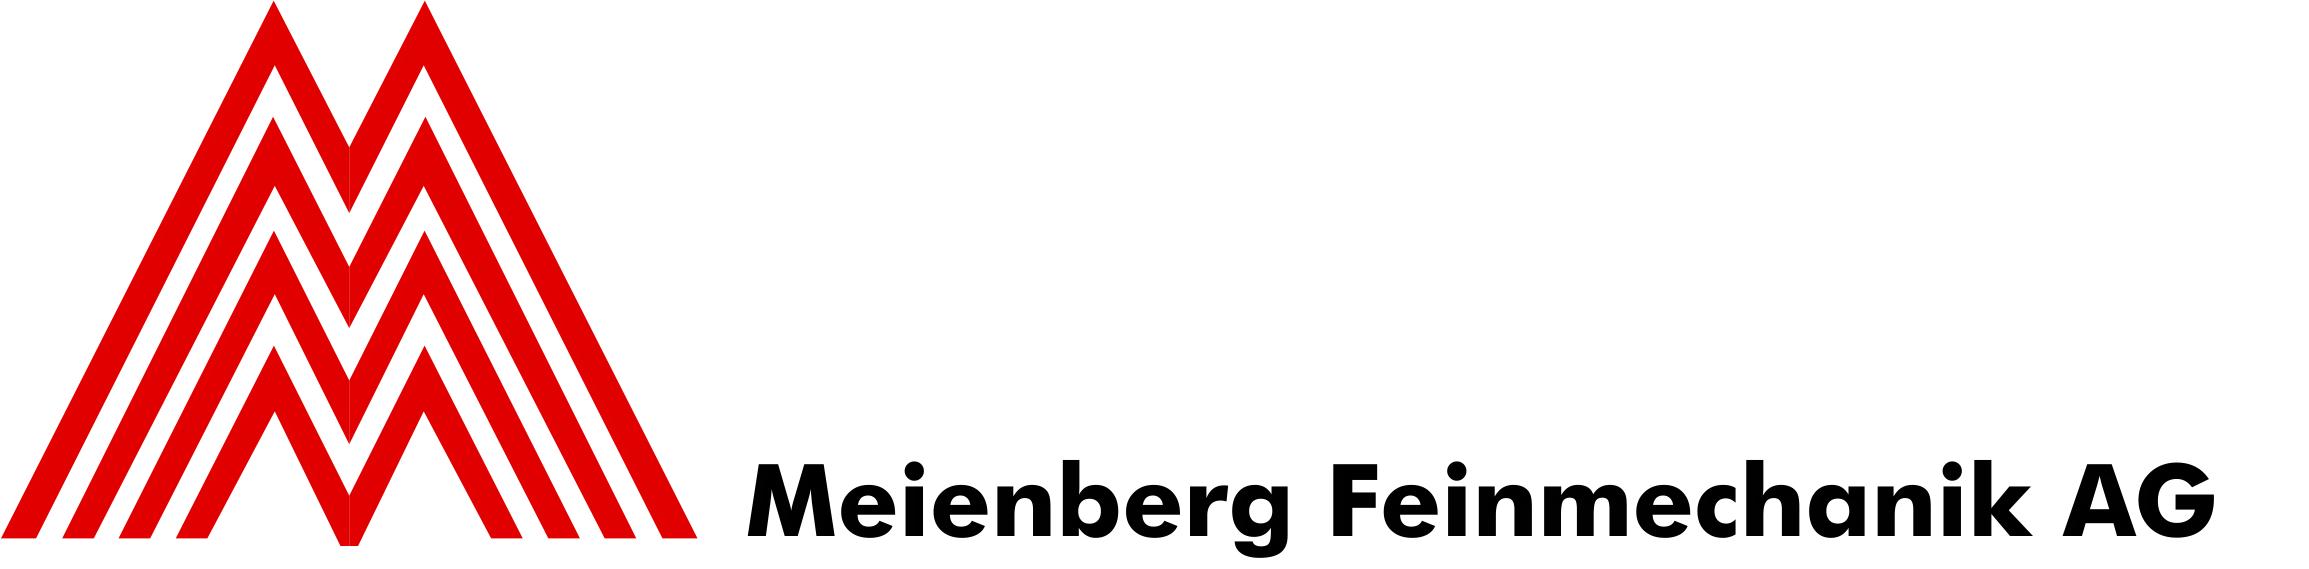 Meienberg Feinmechanik AG Logo